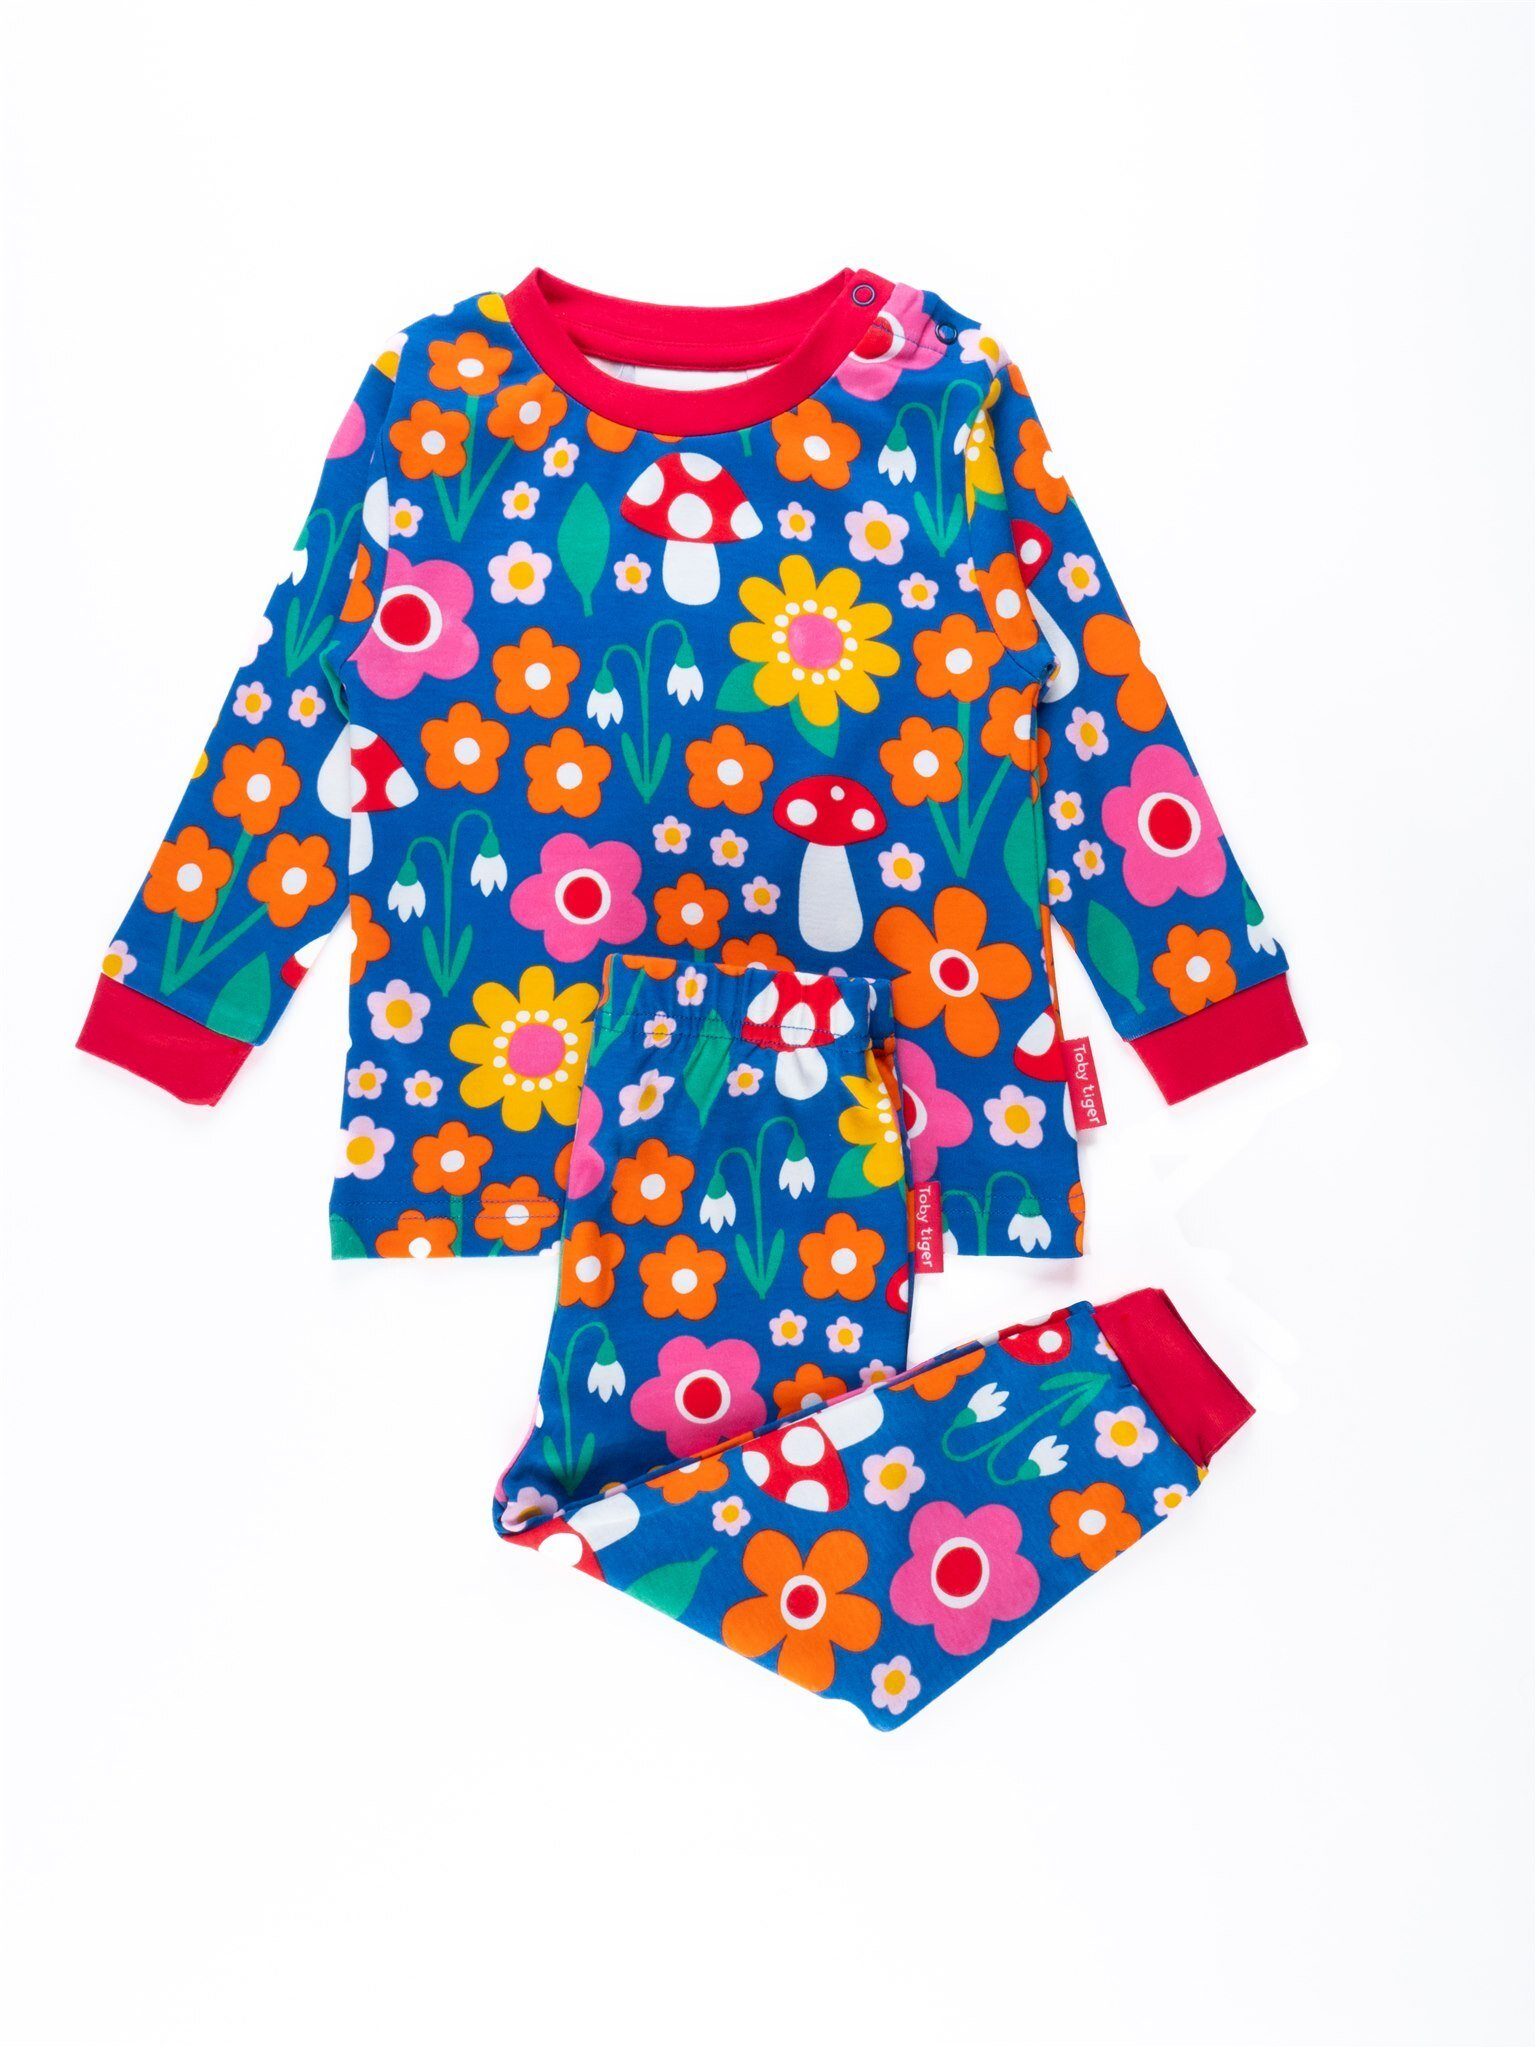 Toby Tiger Schlafanzug Schlafanzug mit Blumen Muster und Pilz Applikation